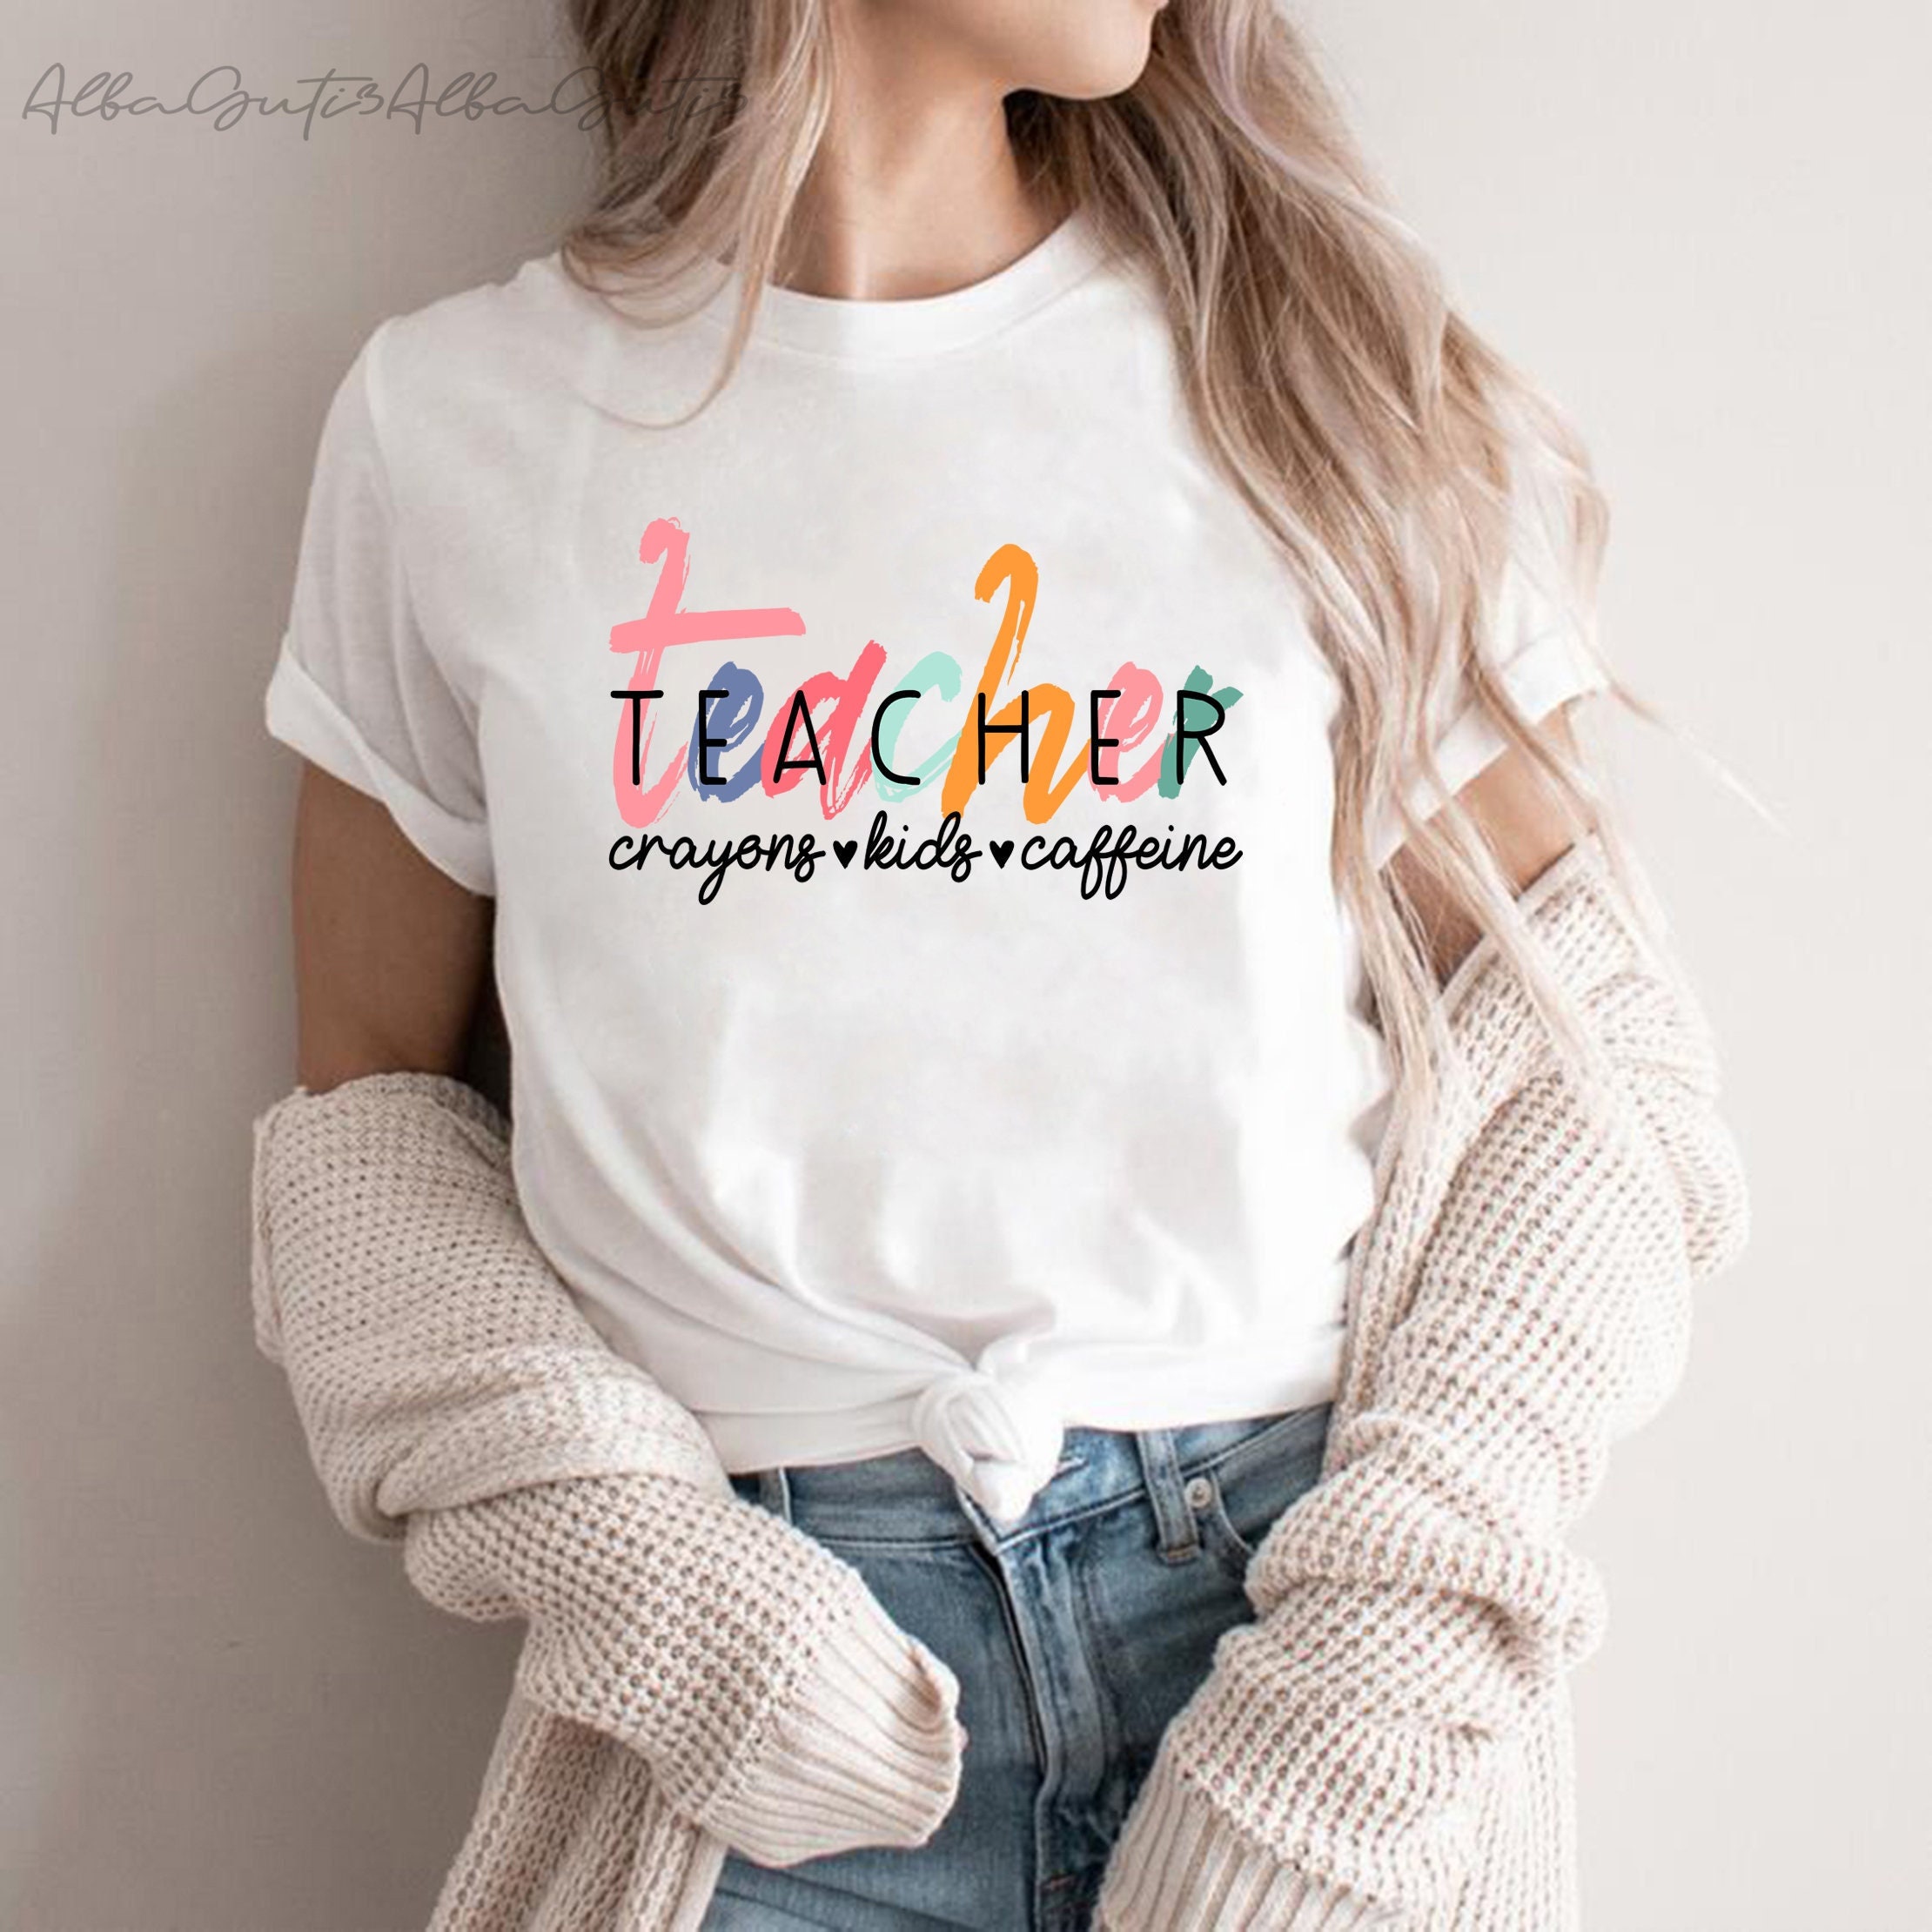 School Shirt Teacher Appreciation Shirt Fun Shirt Colorful Shirt Crayons-Kids-Caffeine Shirt Teacher Shirt